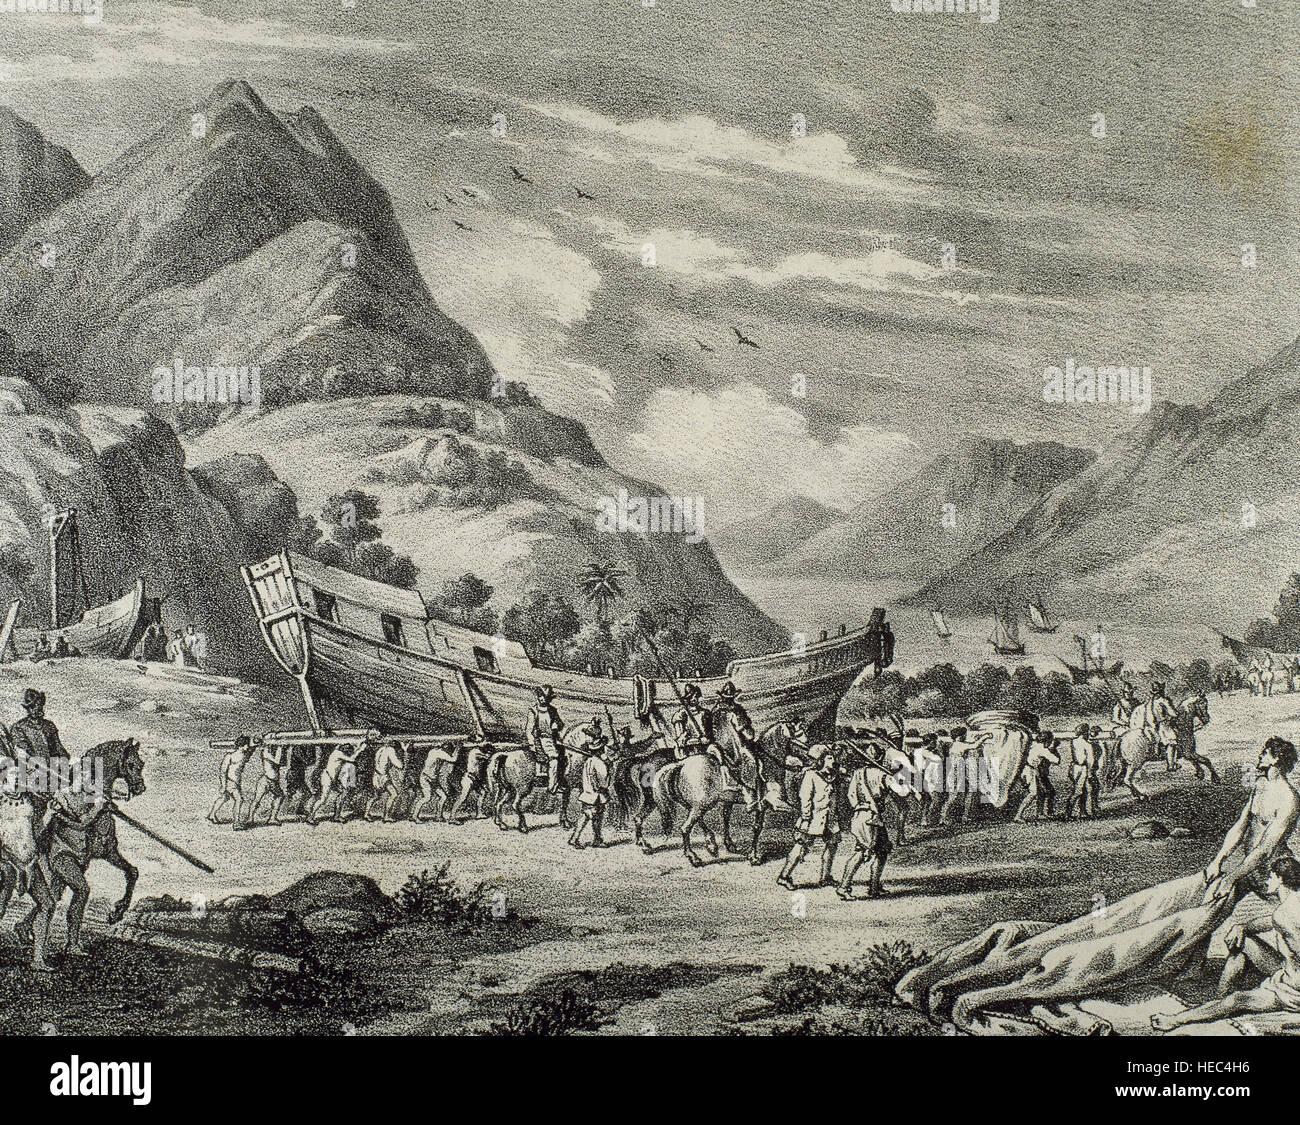 Eroberung von Mexiko, 1519. Spanier bewegen ihrer Flotte durch die Berge. Gravur in "Historia de Espana". des 19. Jahrhunderts. Stockfoto